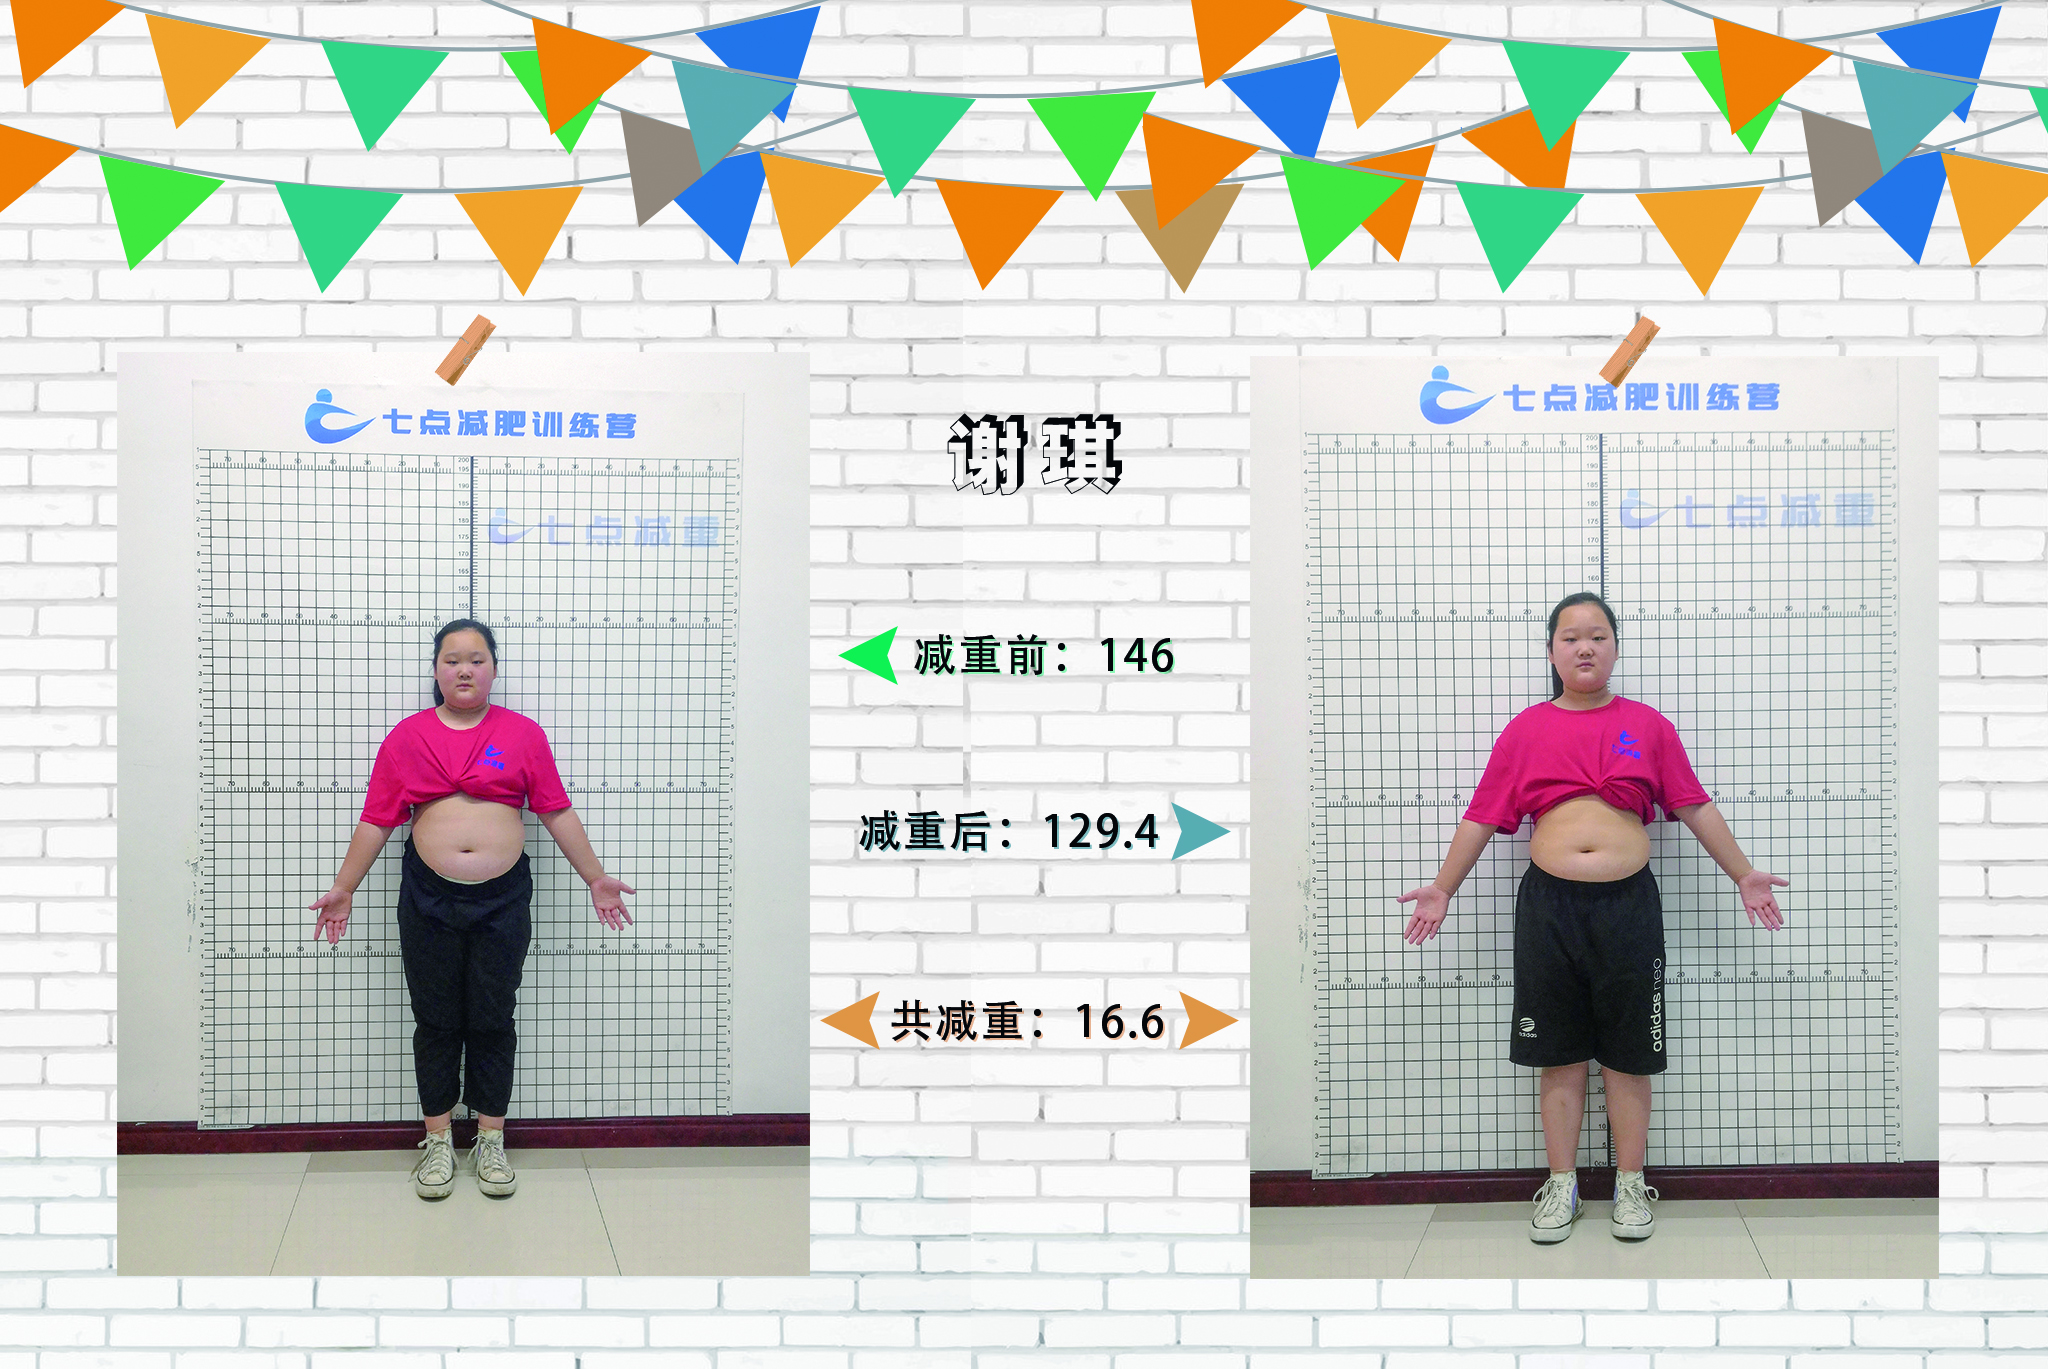 谢琪 28天减重16.6斤